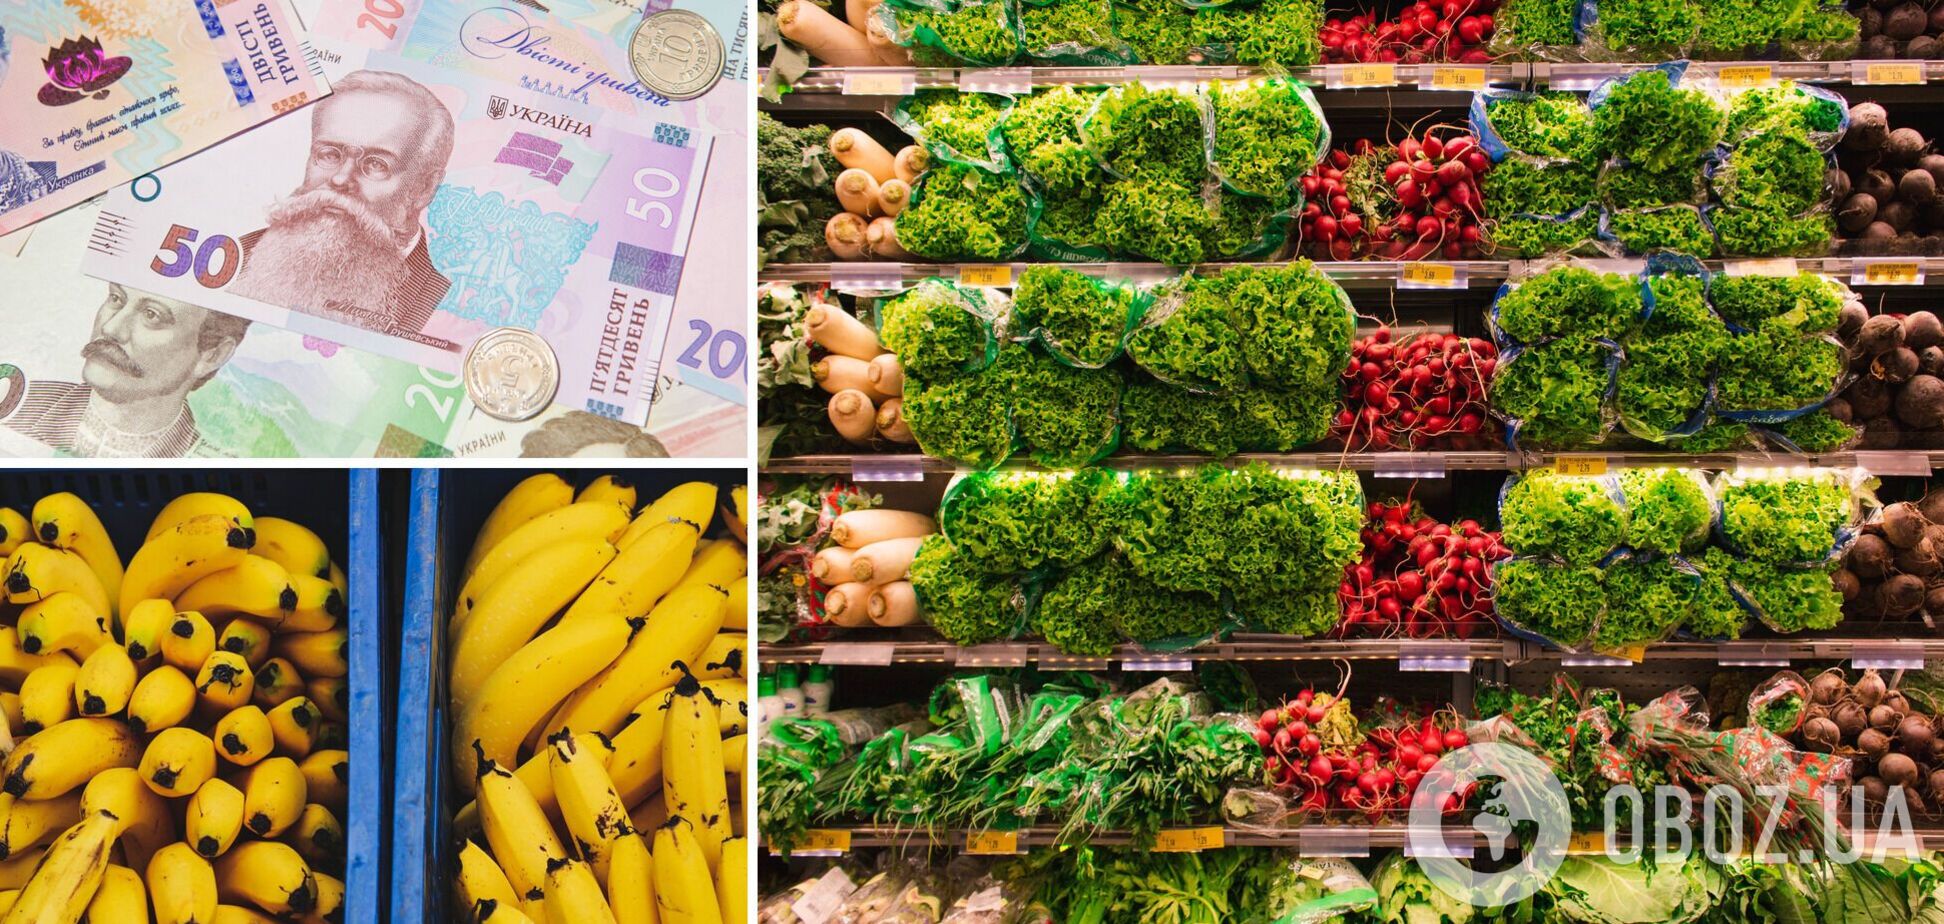 Стало відомо, які овочі та фрукти приносять 70% виторгу супермаркетам в Україні